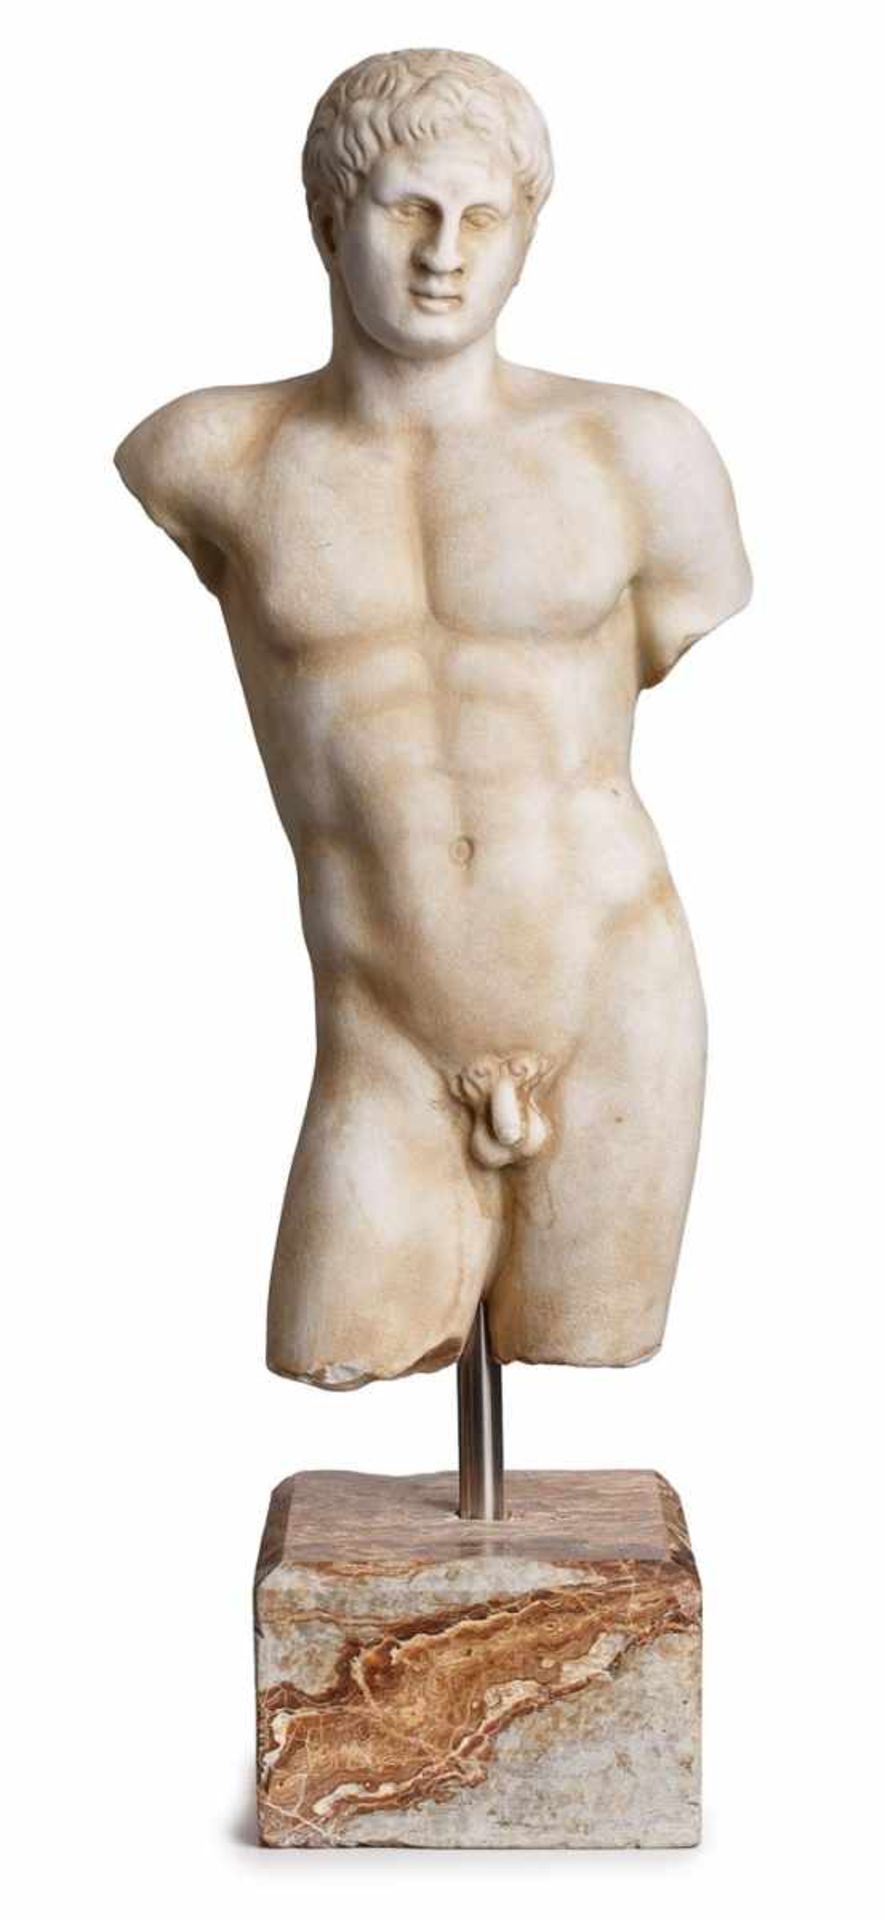 Torso "Junger männlicher Akt", Italien um 1900. Griechischer Marmor. Kniestück eines musku- lösen